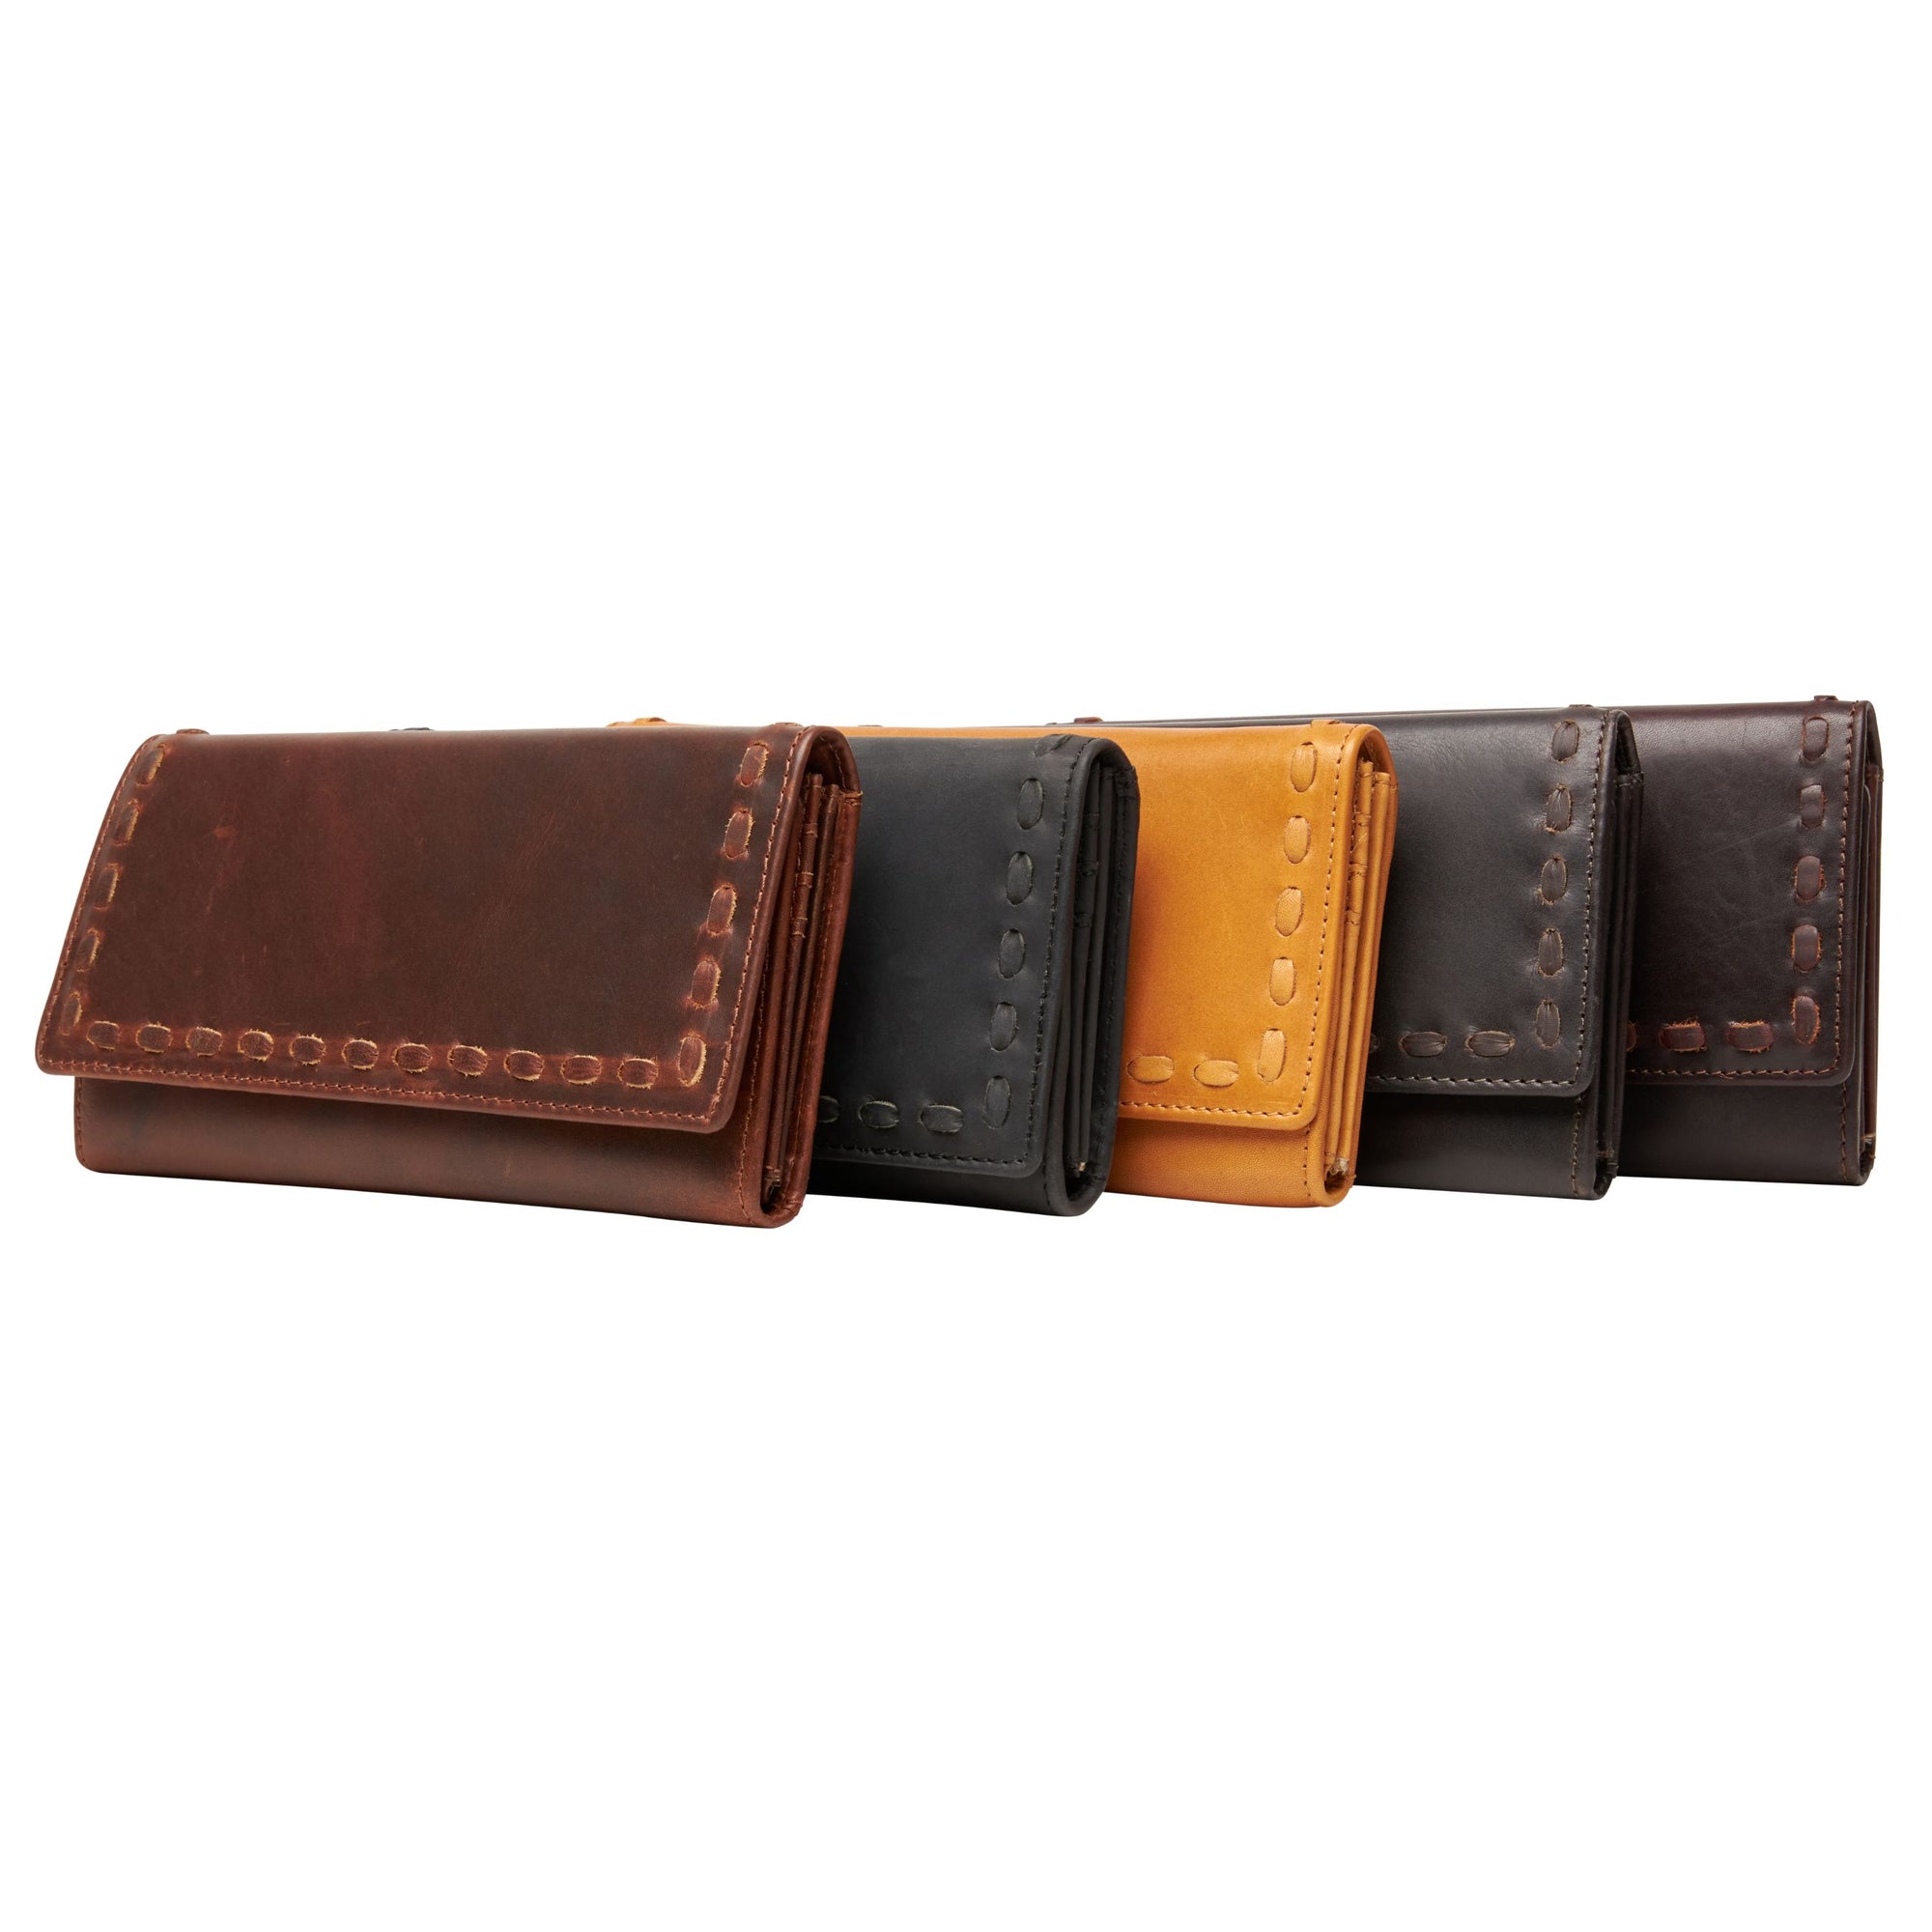 Hope RFID Genuine Leather Wallet